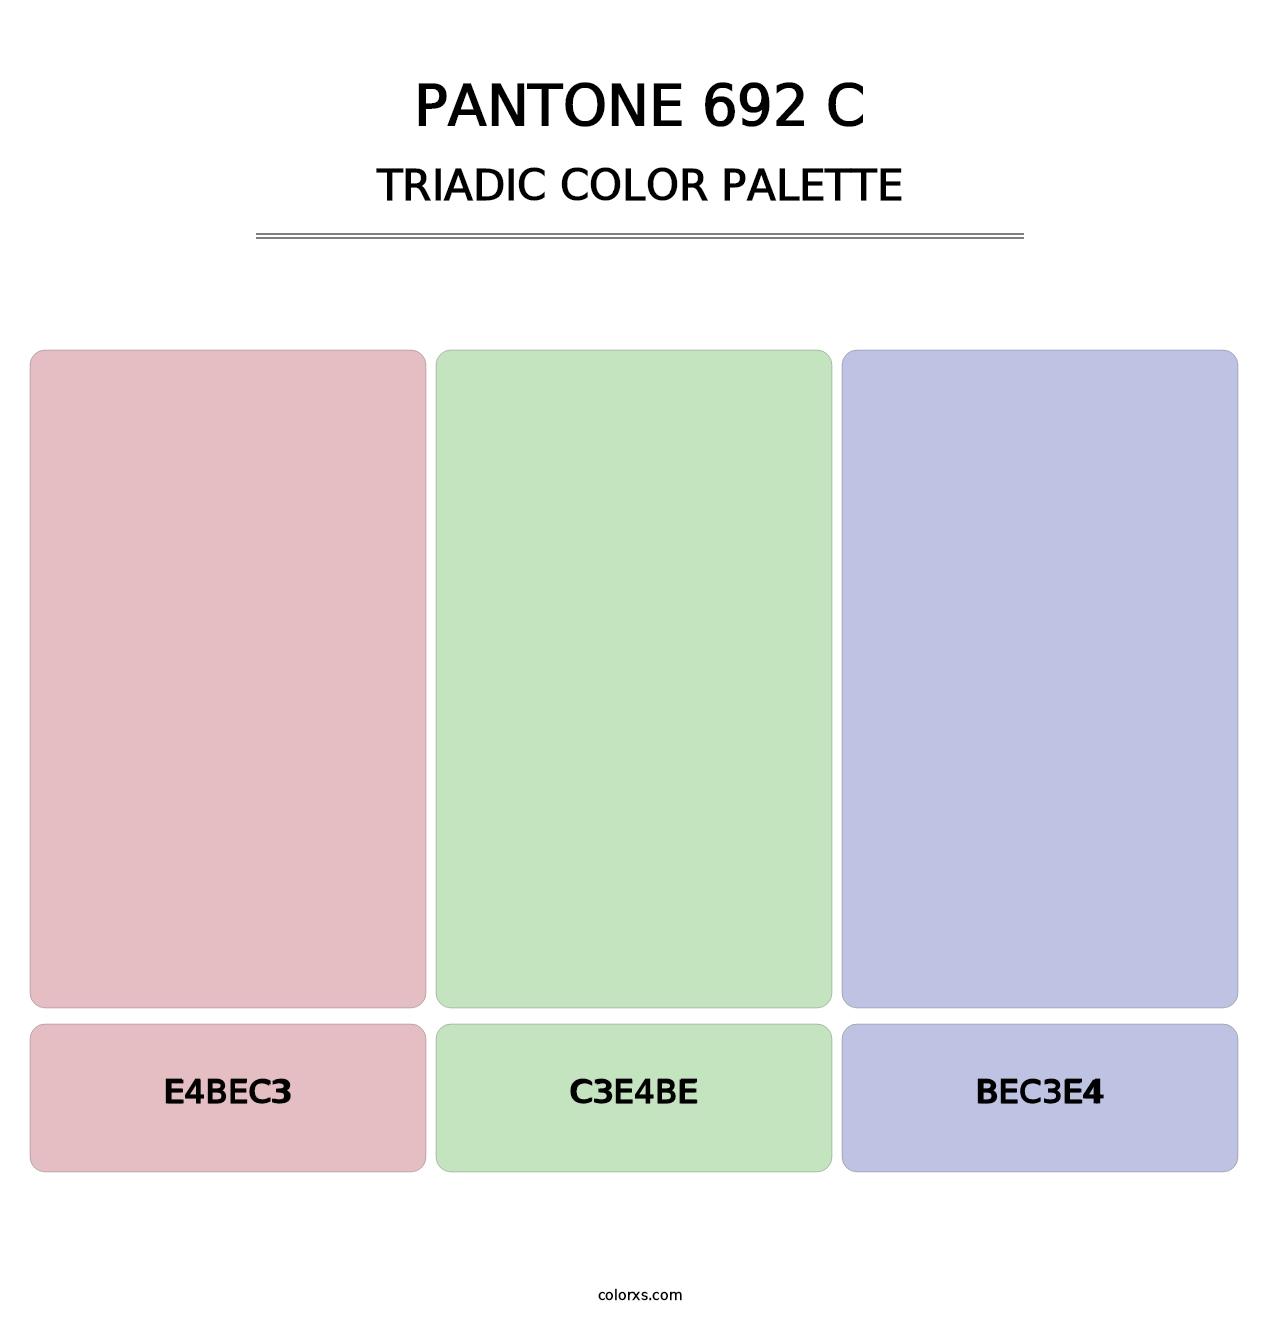 PANTONE 692 C - Triadic Color Palette